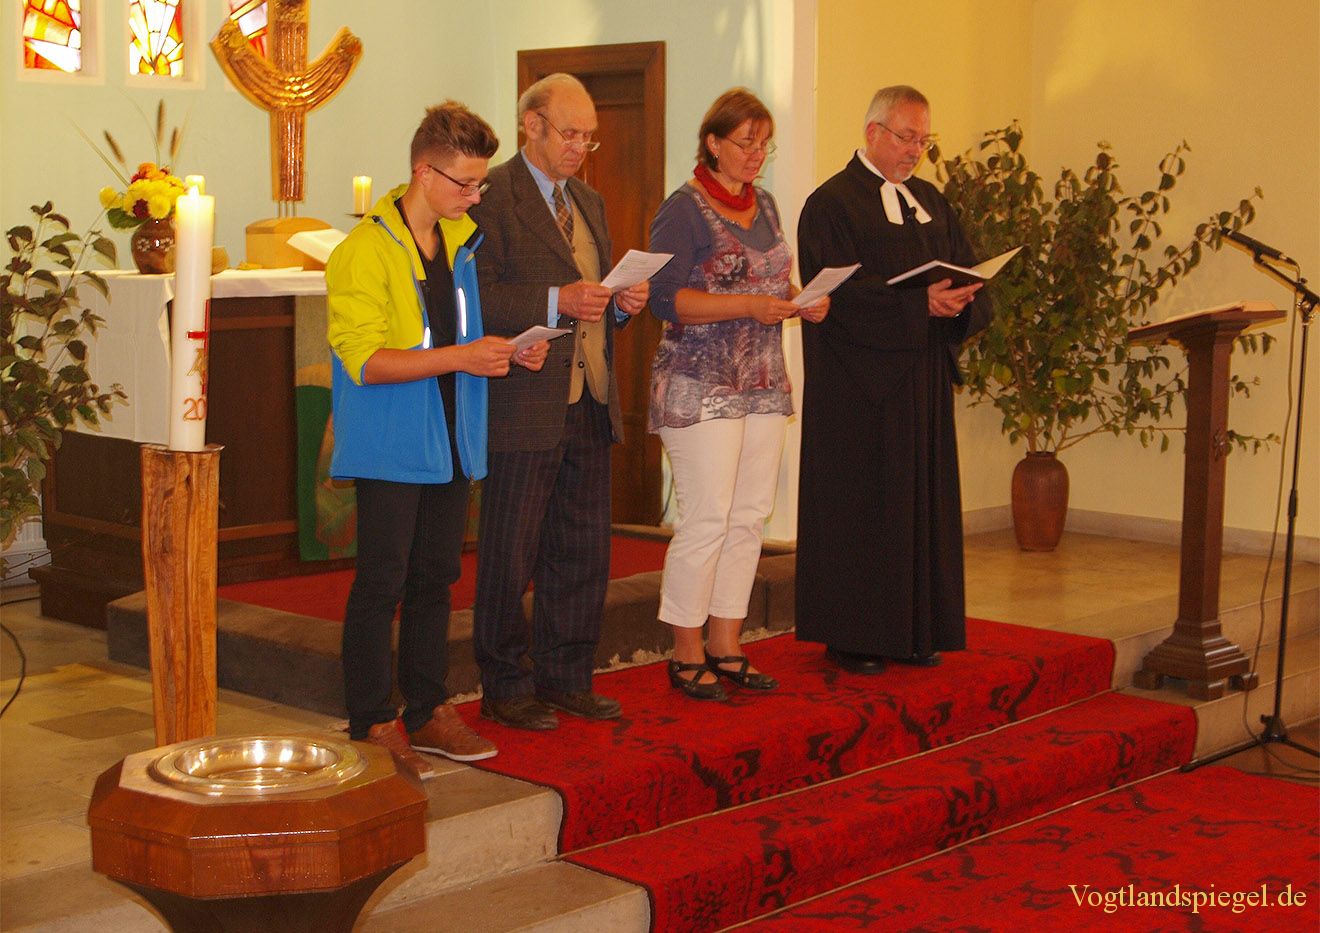 85-jähriges Jubiläum des Kirchgemeindehauses Gommla begangen